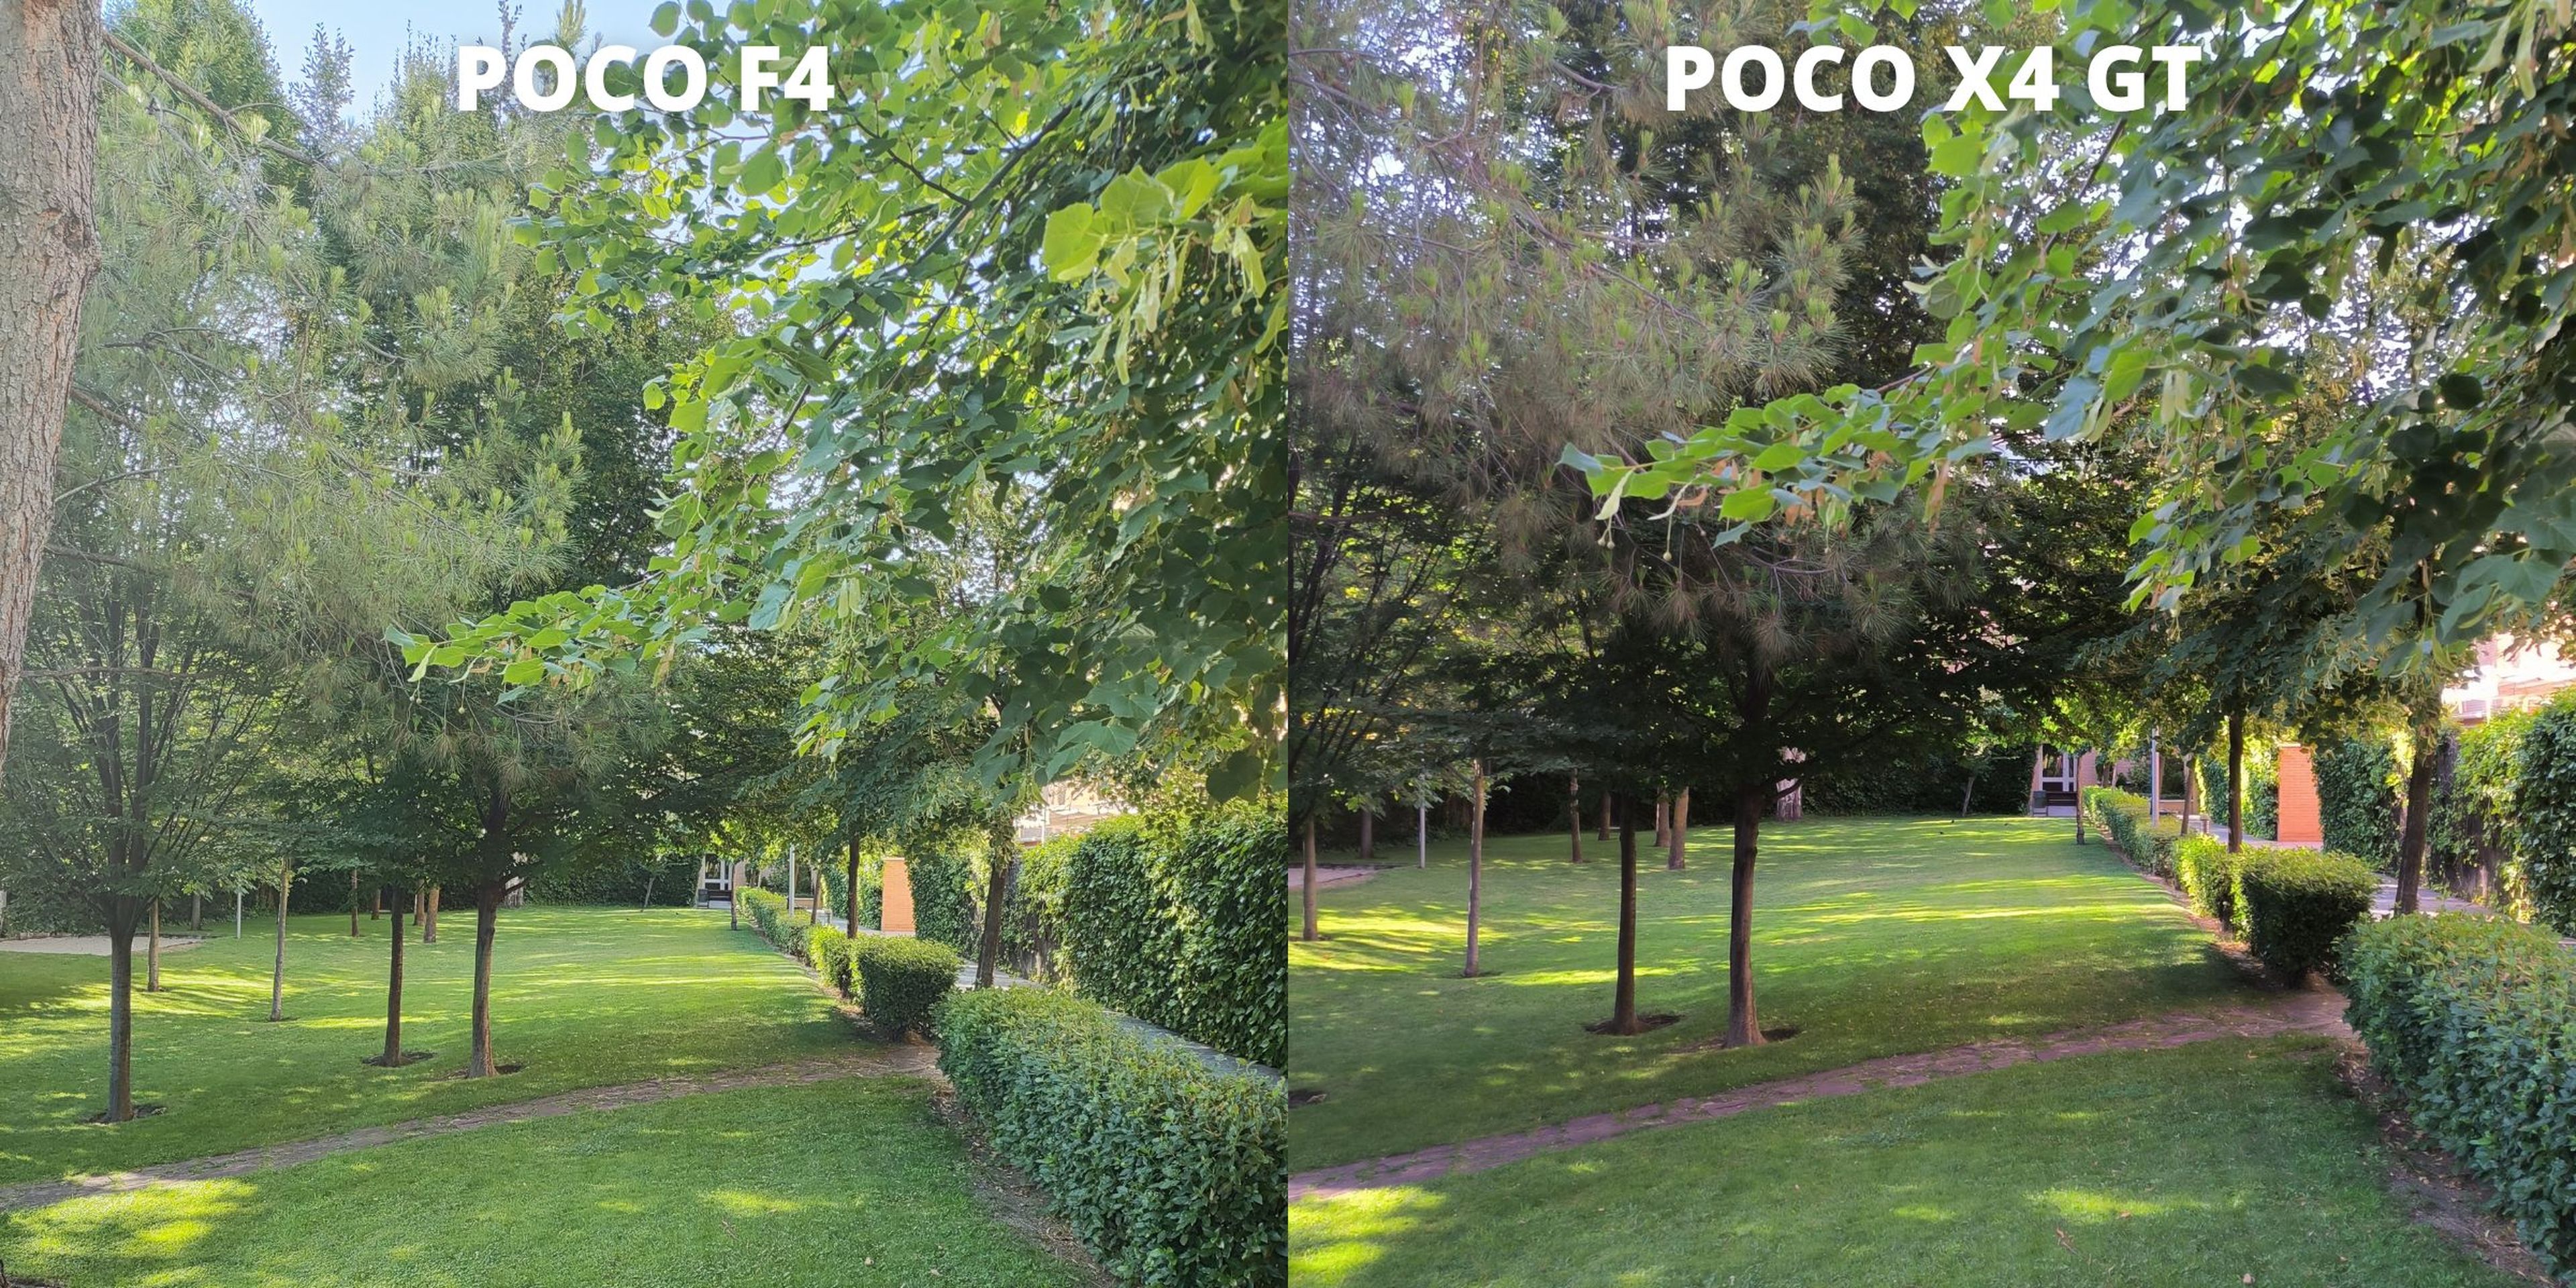 POCO F4 vs POCO X4 GT: comparativa, características y opinión